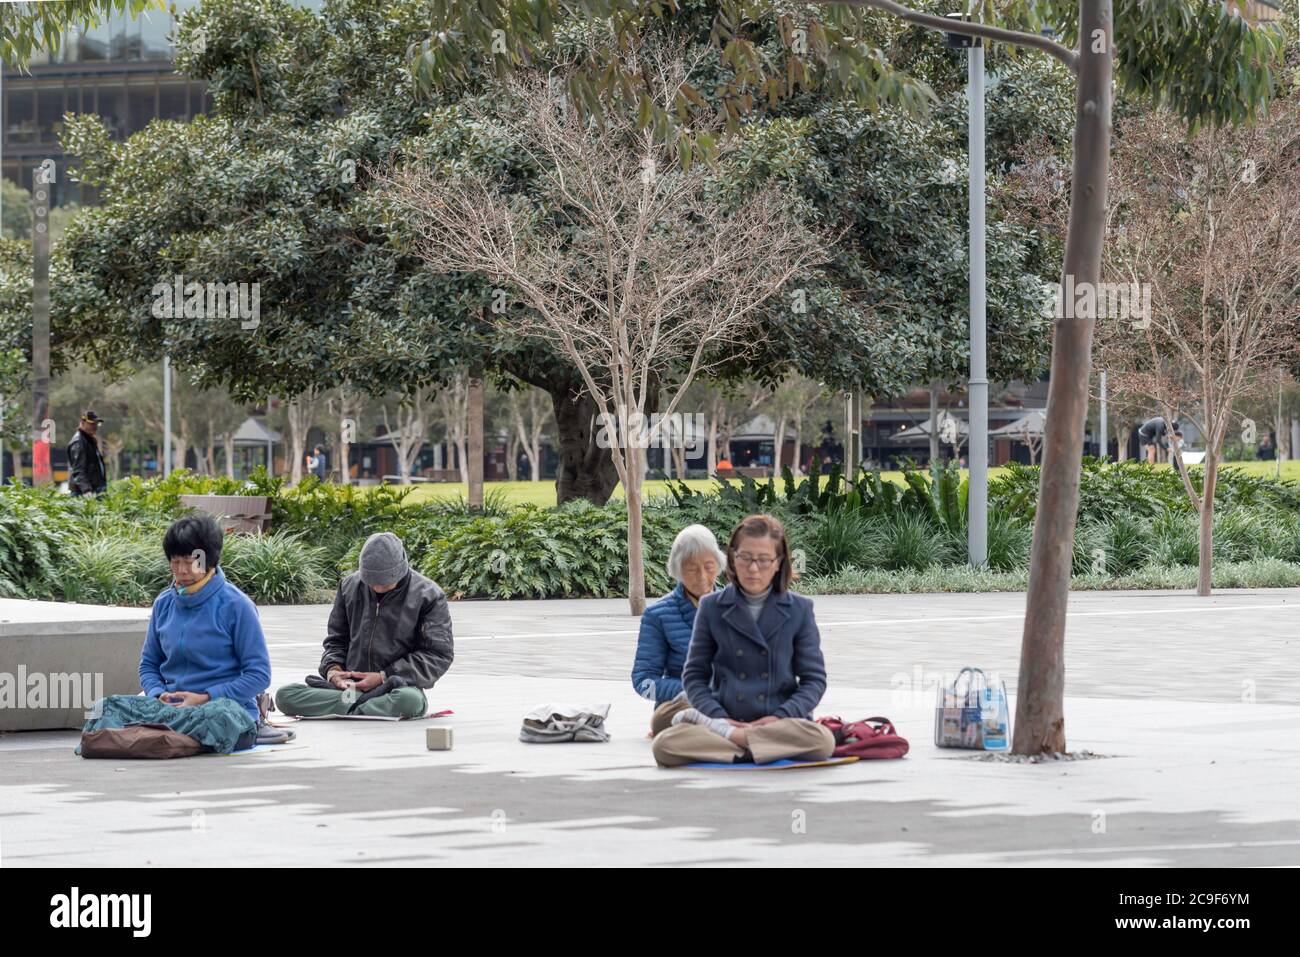 Un matin hivernal à Darling Harbour, Sydney, Australie, un petit groupe de personnes asiatiques plus âgées s'assoient en croix sur le sol et méditent Banque D'Images